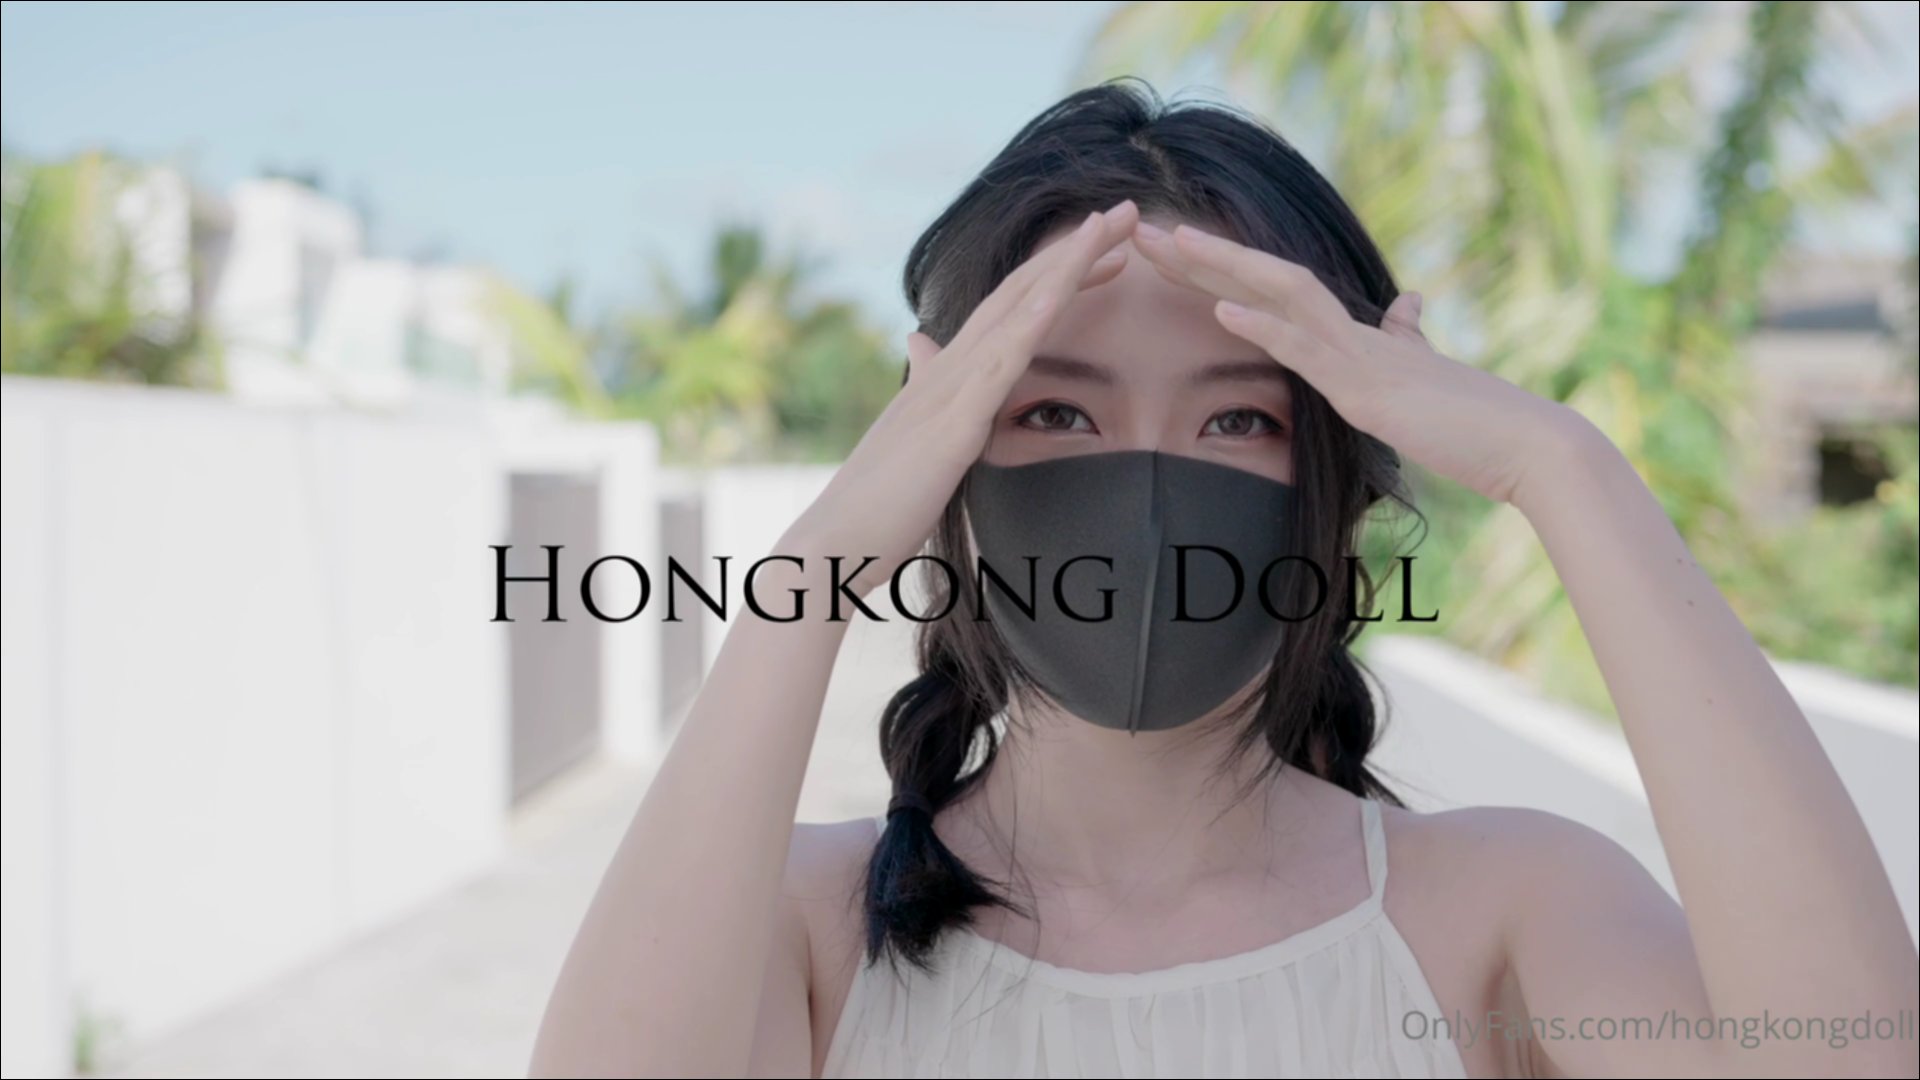 hong kong doll